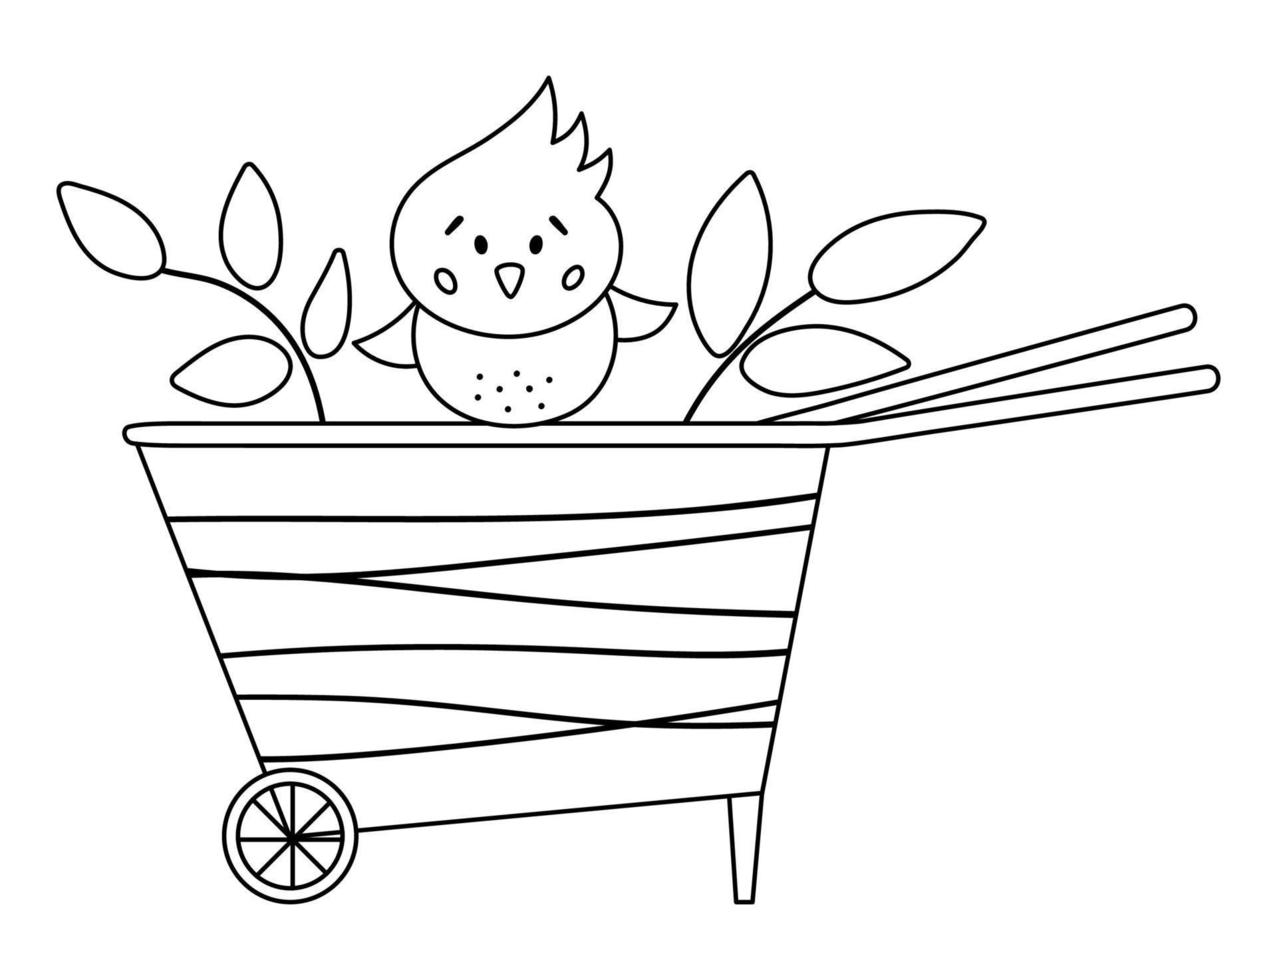 Vektor süße schwarz-weiße Schubkarre mit Küken-Symbol isoliert auf weißem Hintergrund. skizzieren sie frühlingsgartenwerkzeugillustration oder malseite. lustiges gartengerätebild für kinder.